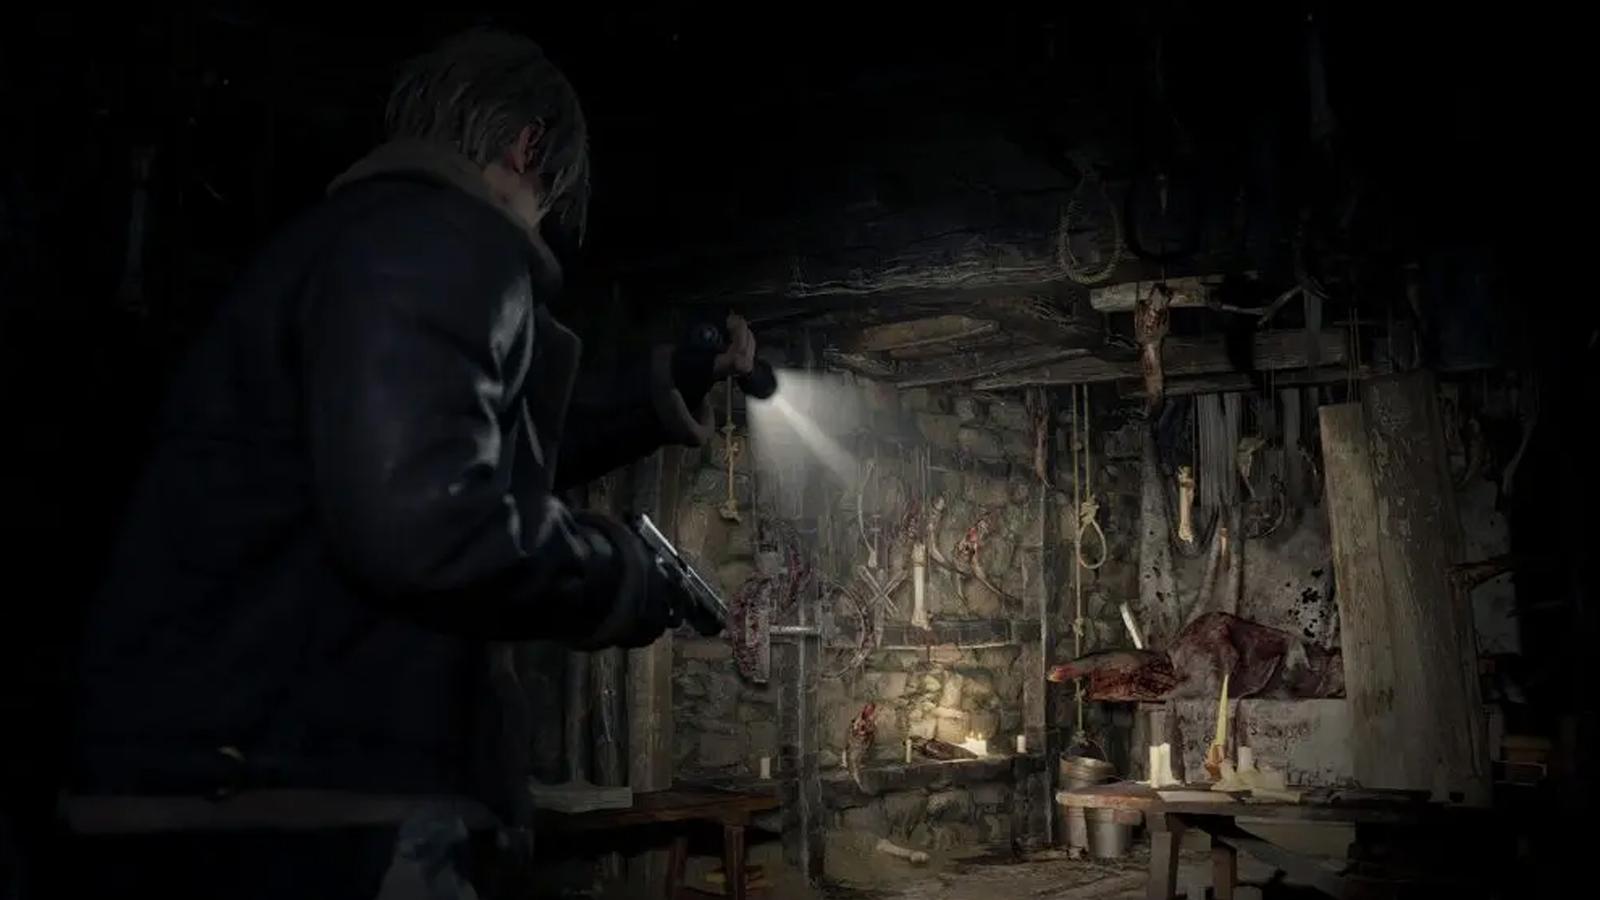 Resident Evil 4 Remake anuncia sus requisitos mínimos y recomendados en PC  - Vandal